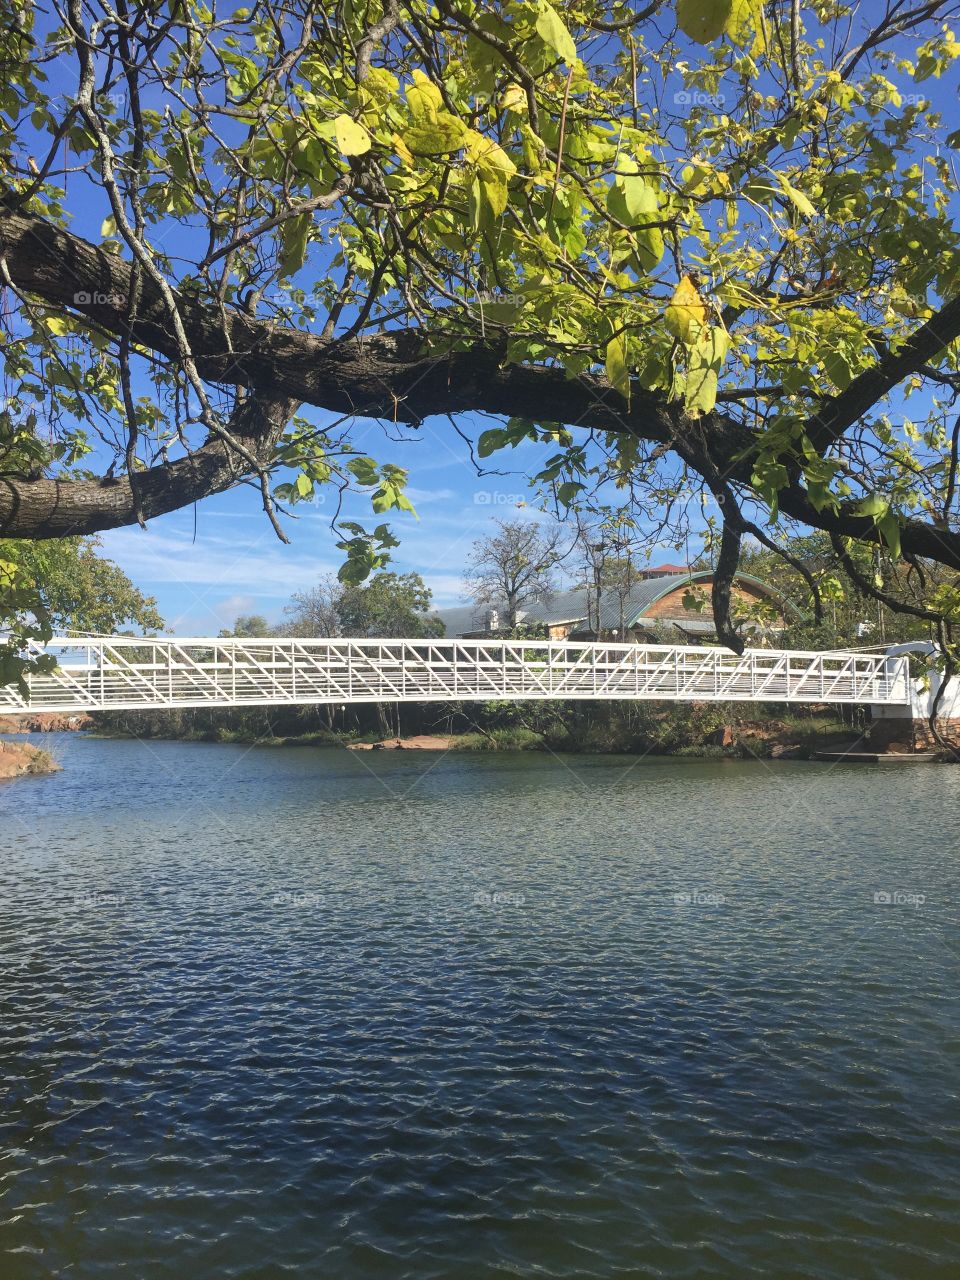 Water bridge